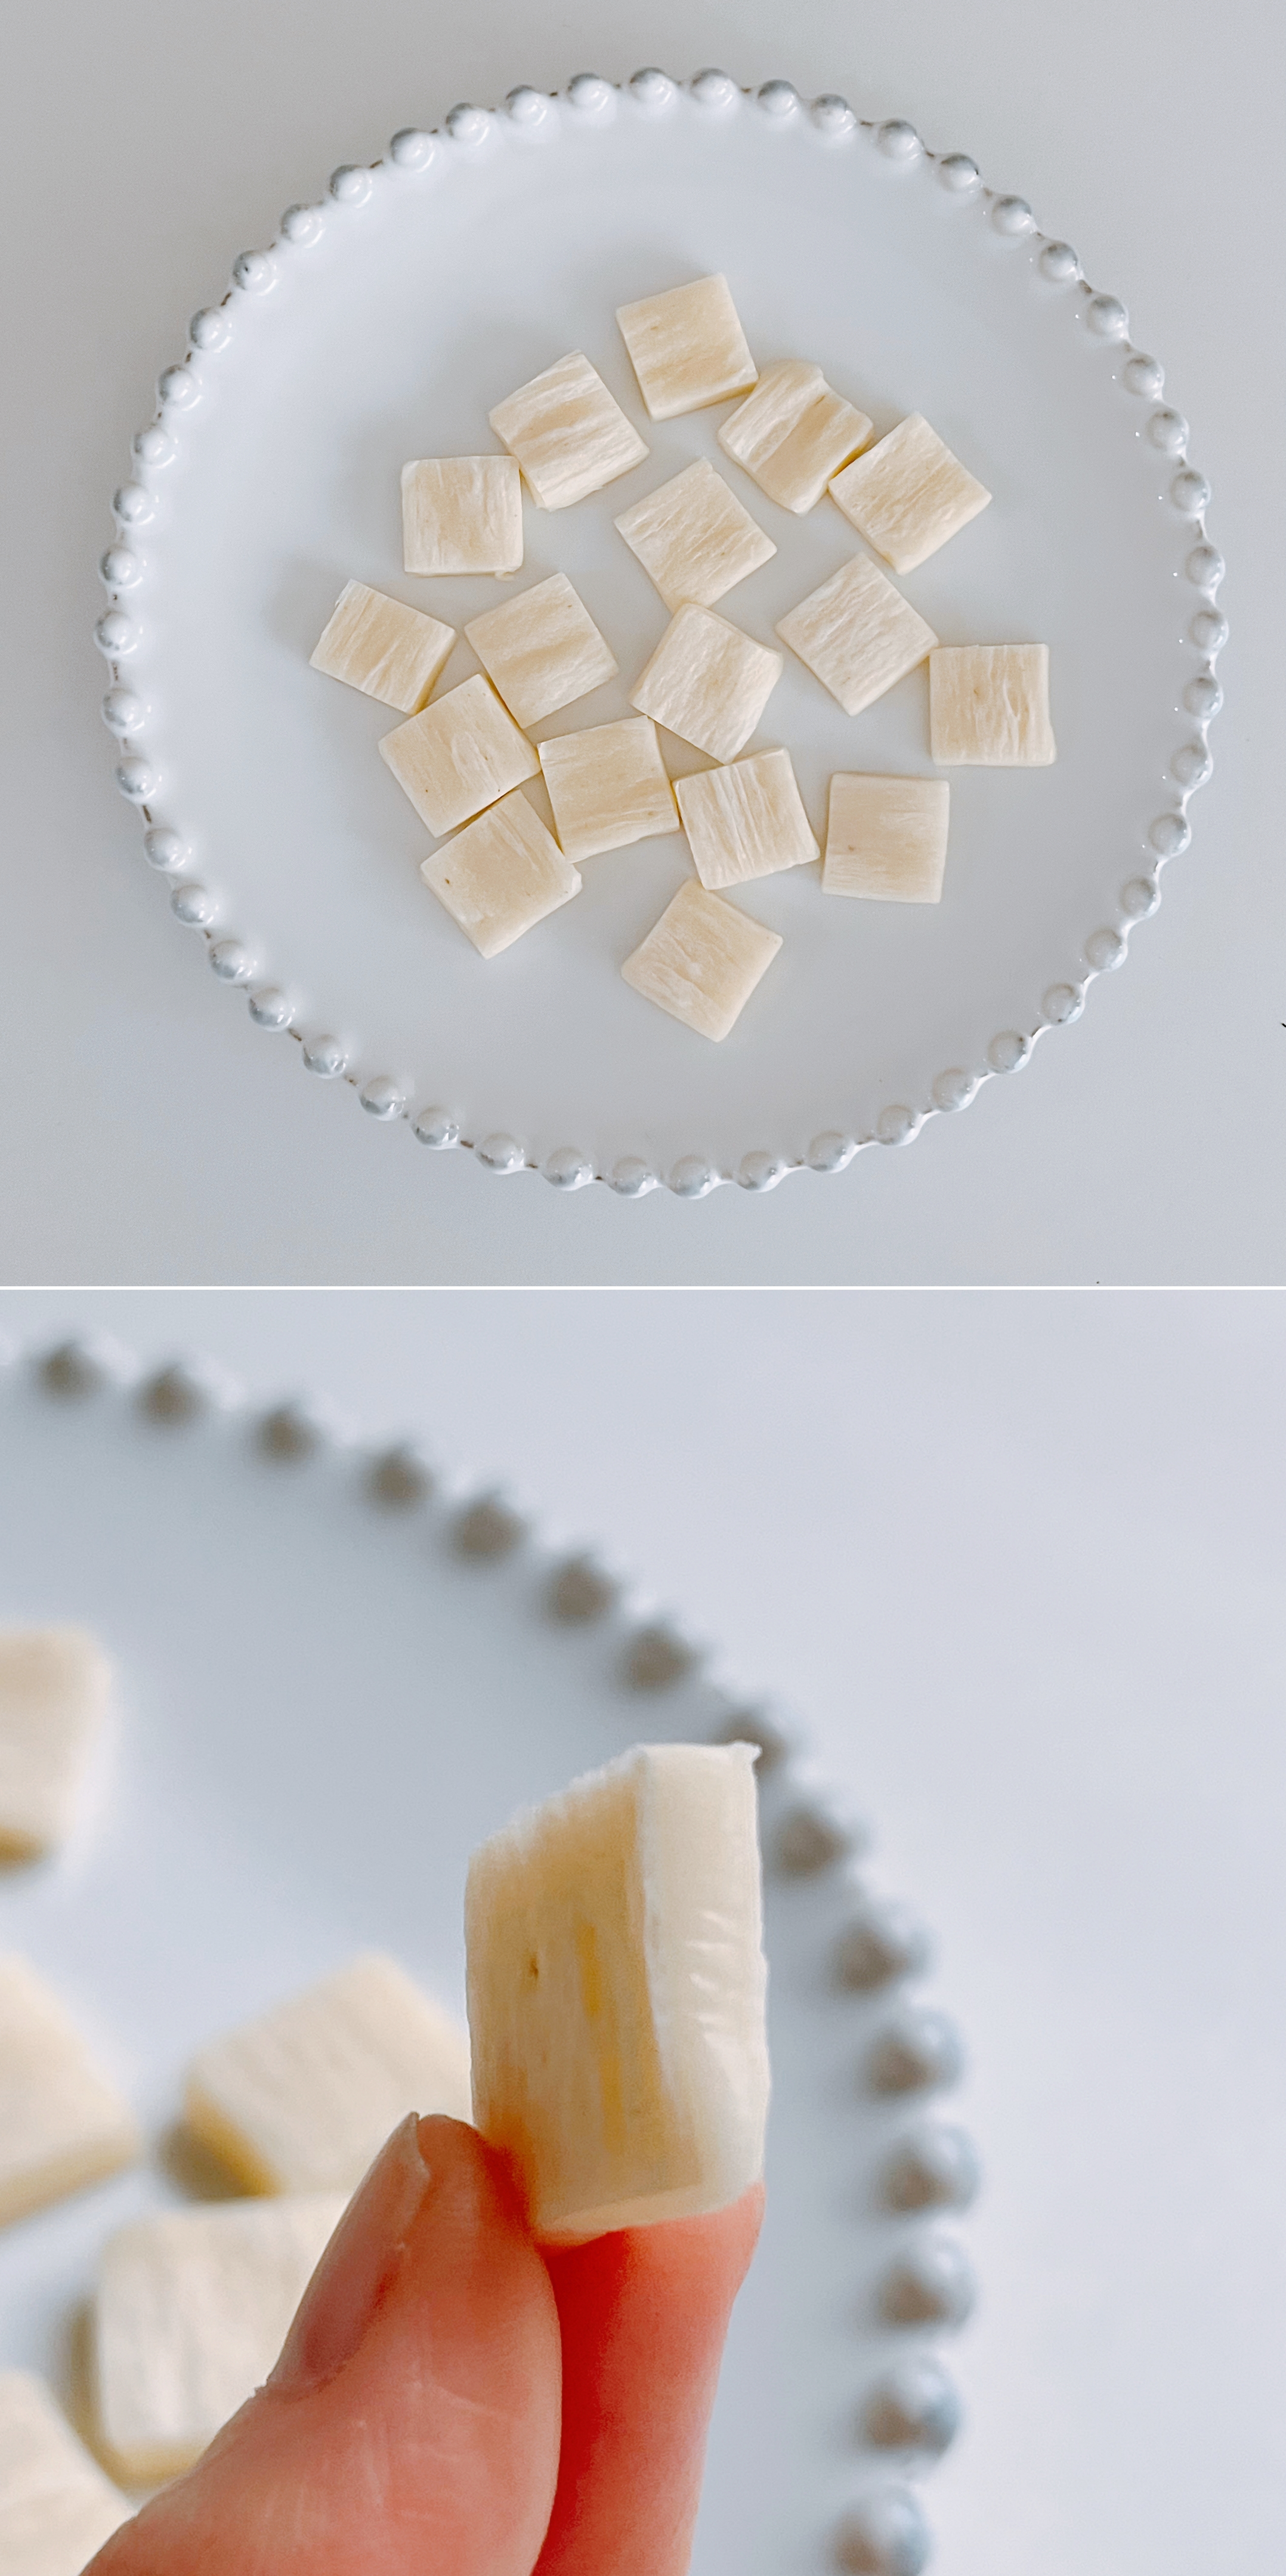 上の画像はお皿に並べられた小さな角切りチーズの集まり。下の画像は一つの角切りチーズを人が指で持っている。